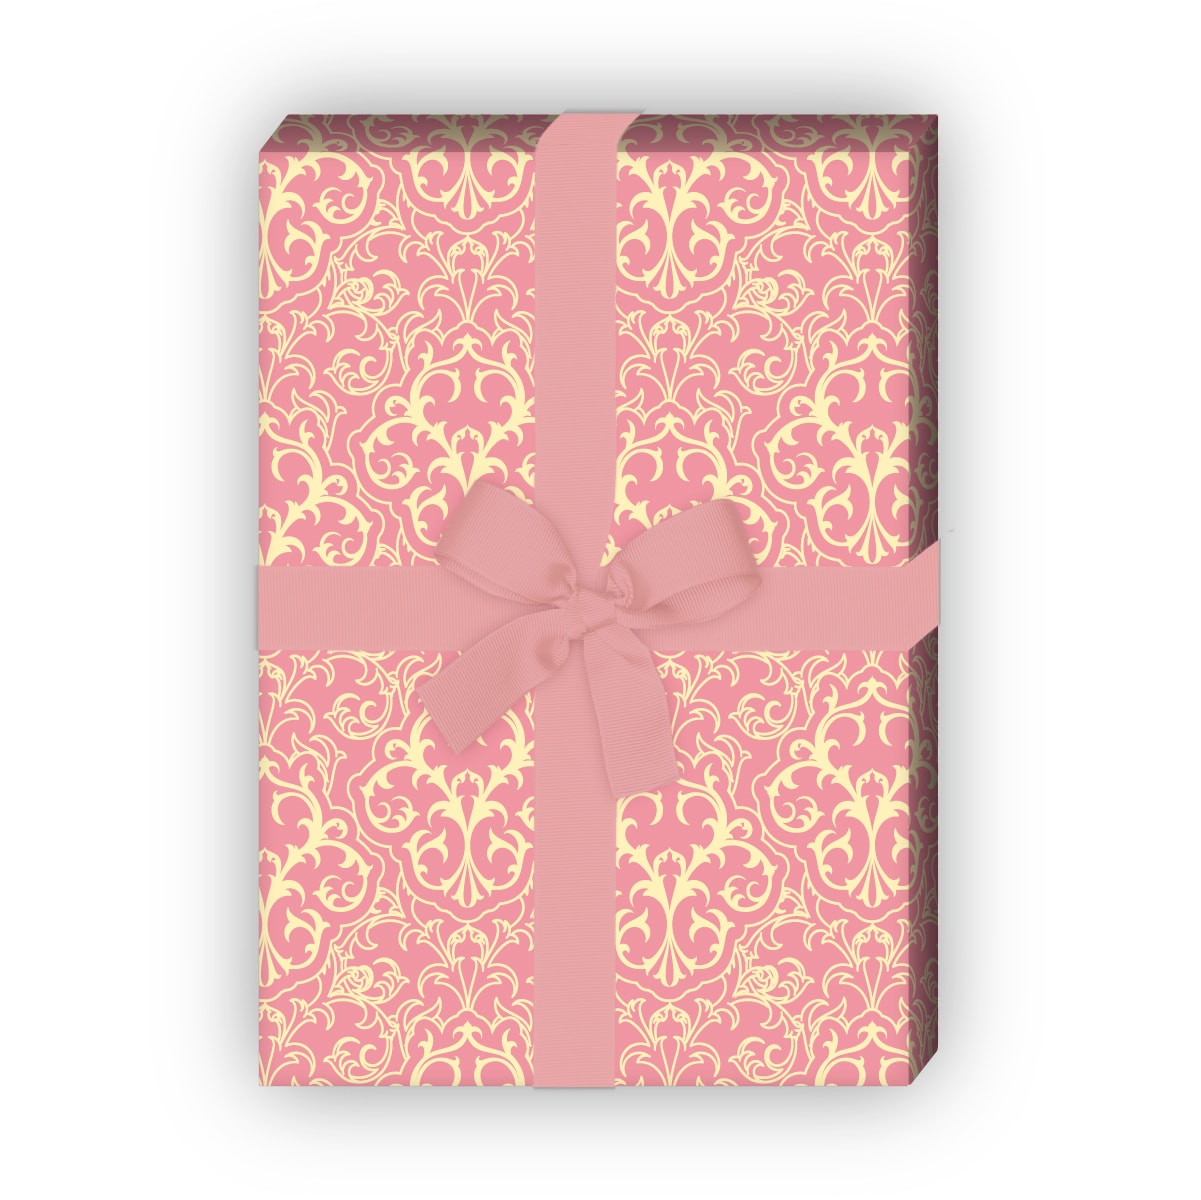 Kartenkaufrausch: Klassisches Retro Geschenkpapier mit aus unserer Retro Papeterie in rosa